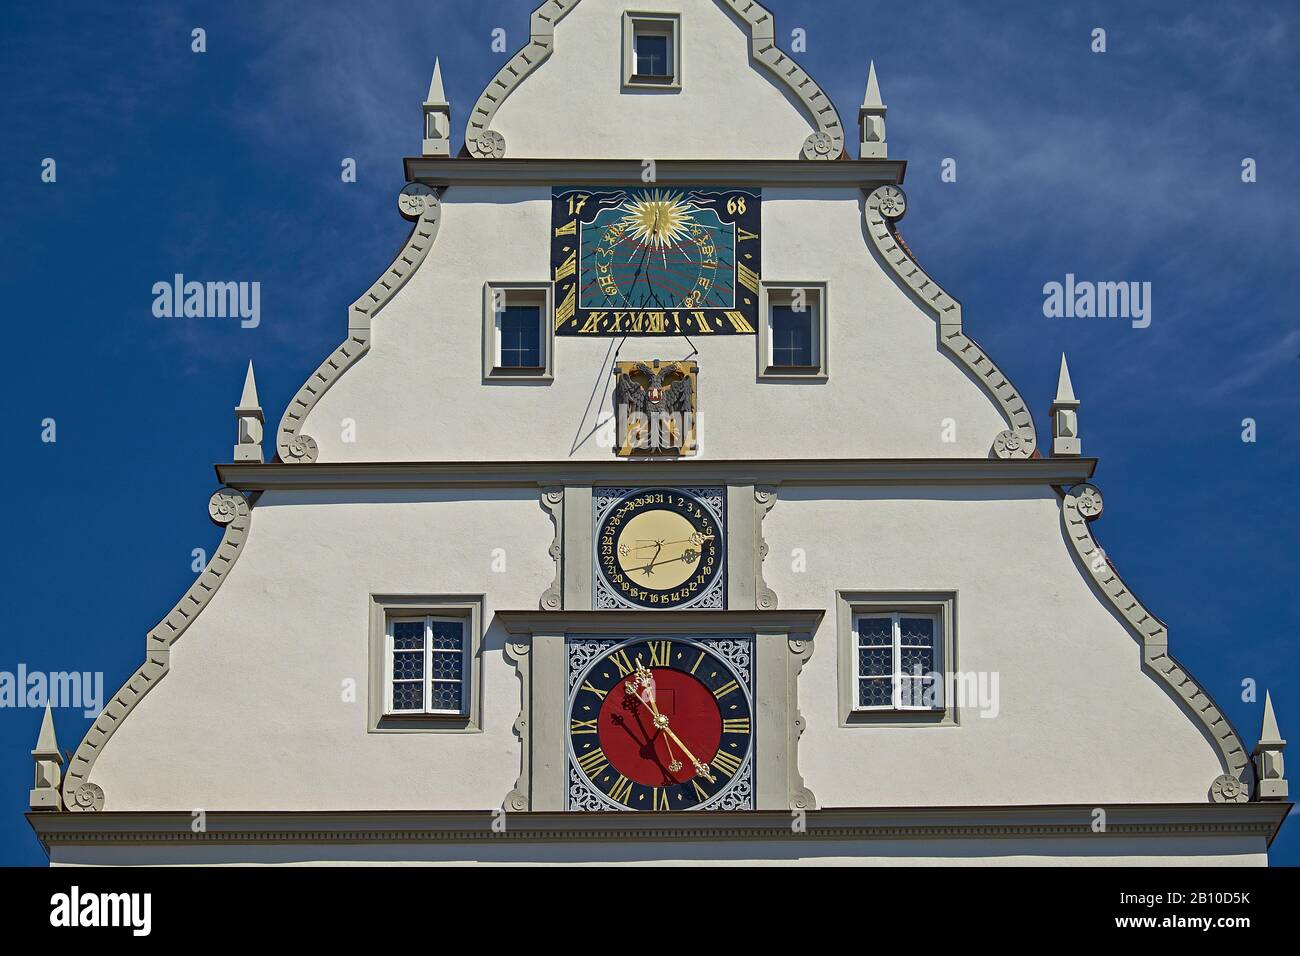 Pignon de la Ratstrinkstube am Marktplatz, Rothenburg ob der Tauber, moyenne-Franconie, Bavière, Allemagne Banque D'Images